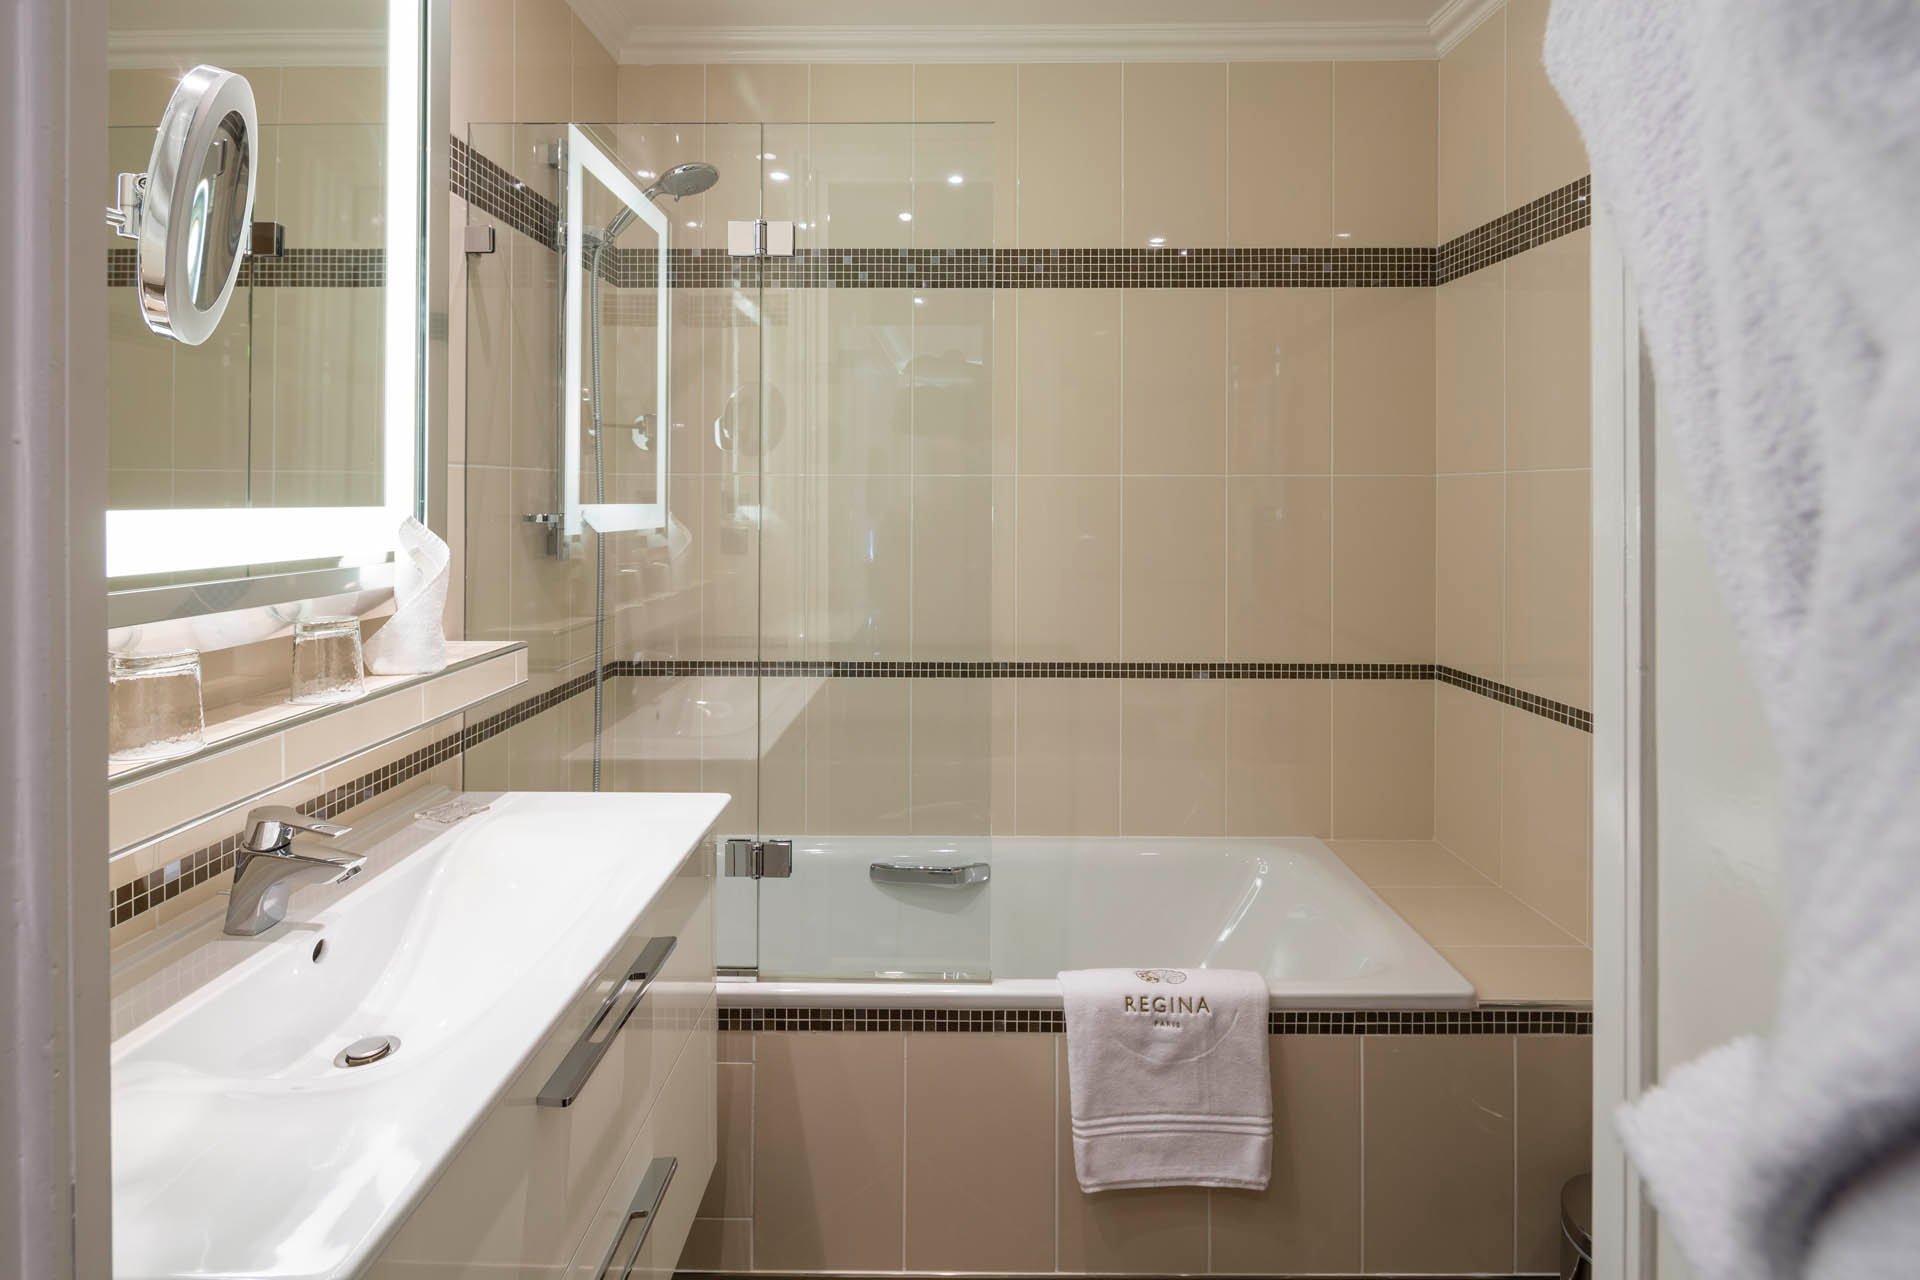 Hotel Regina Louvre Deluxe Room Bathroom